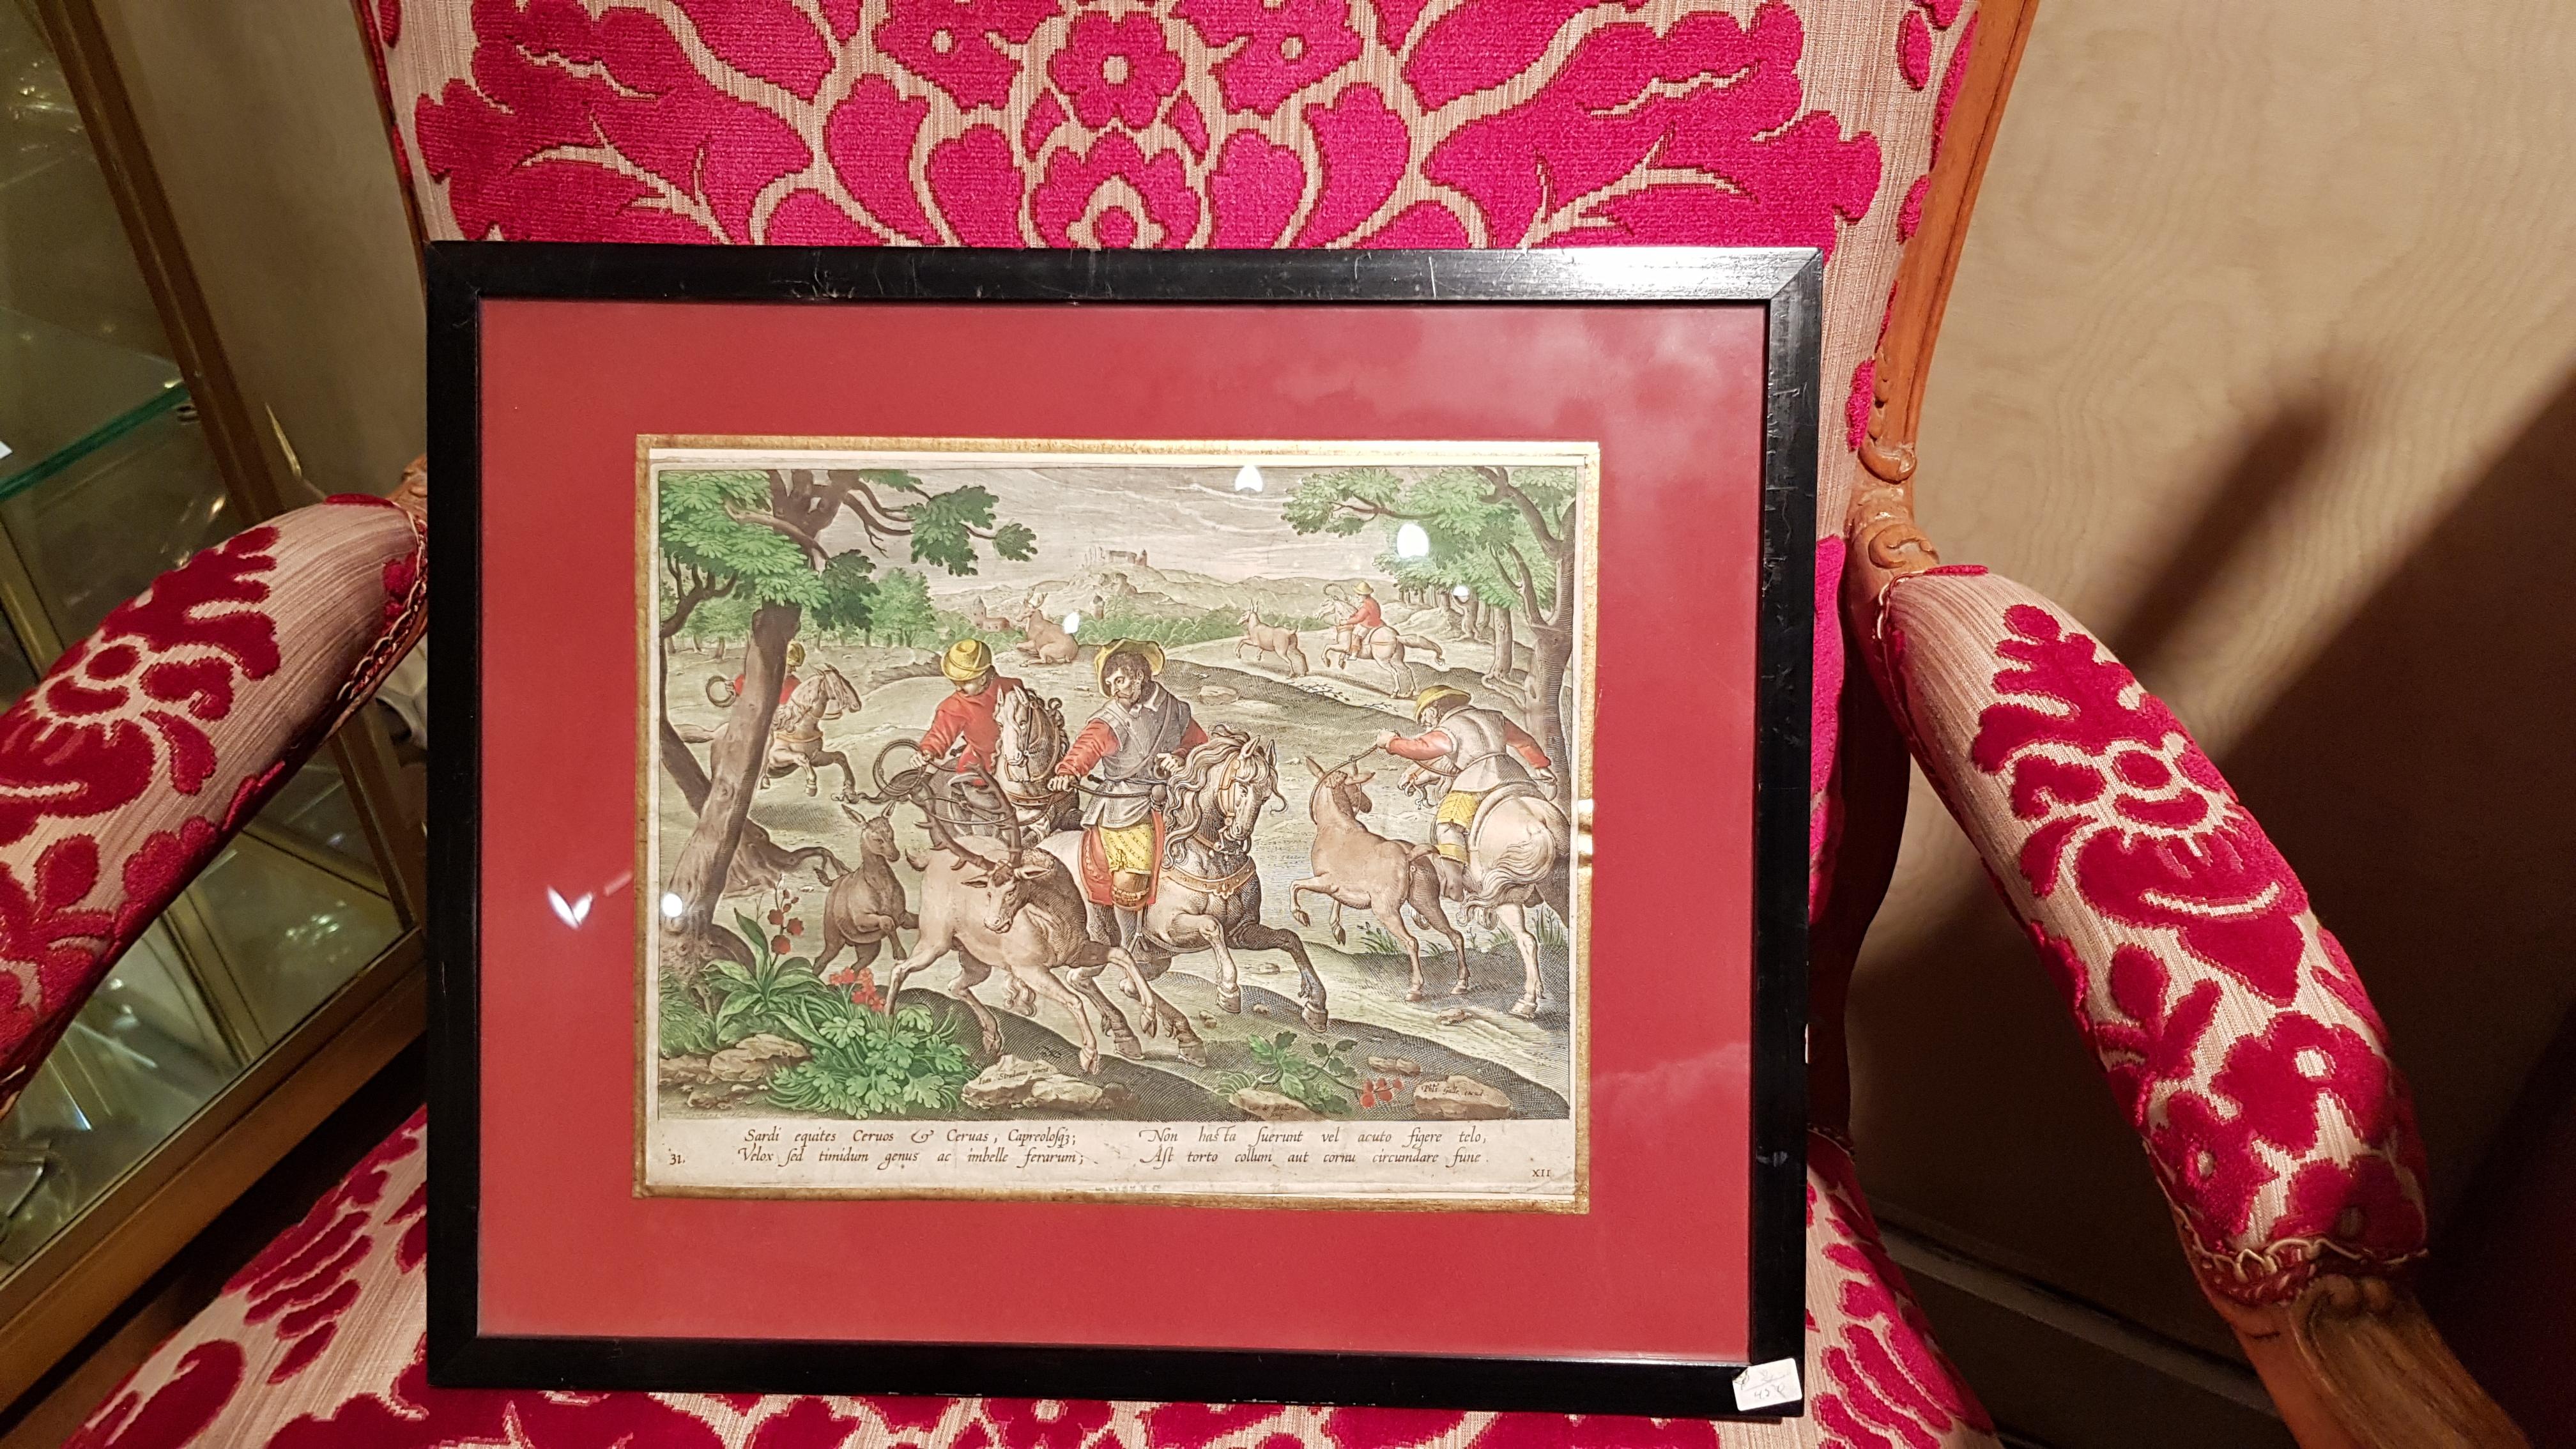 Engraving Hunting: Deer Hunting With Lasso - Renaissance Art by Jan Van der Straeten